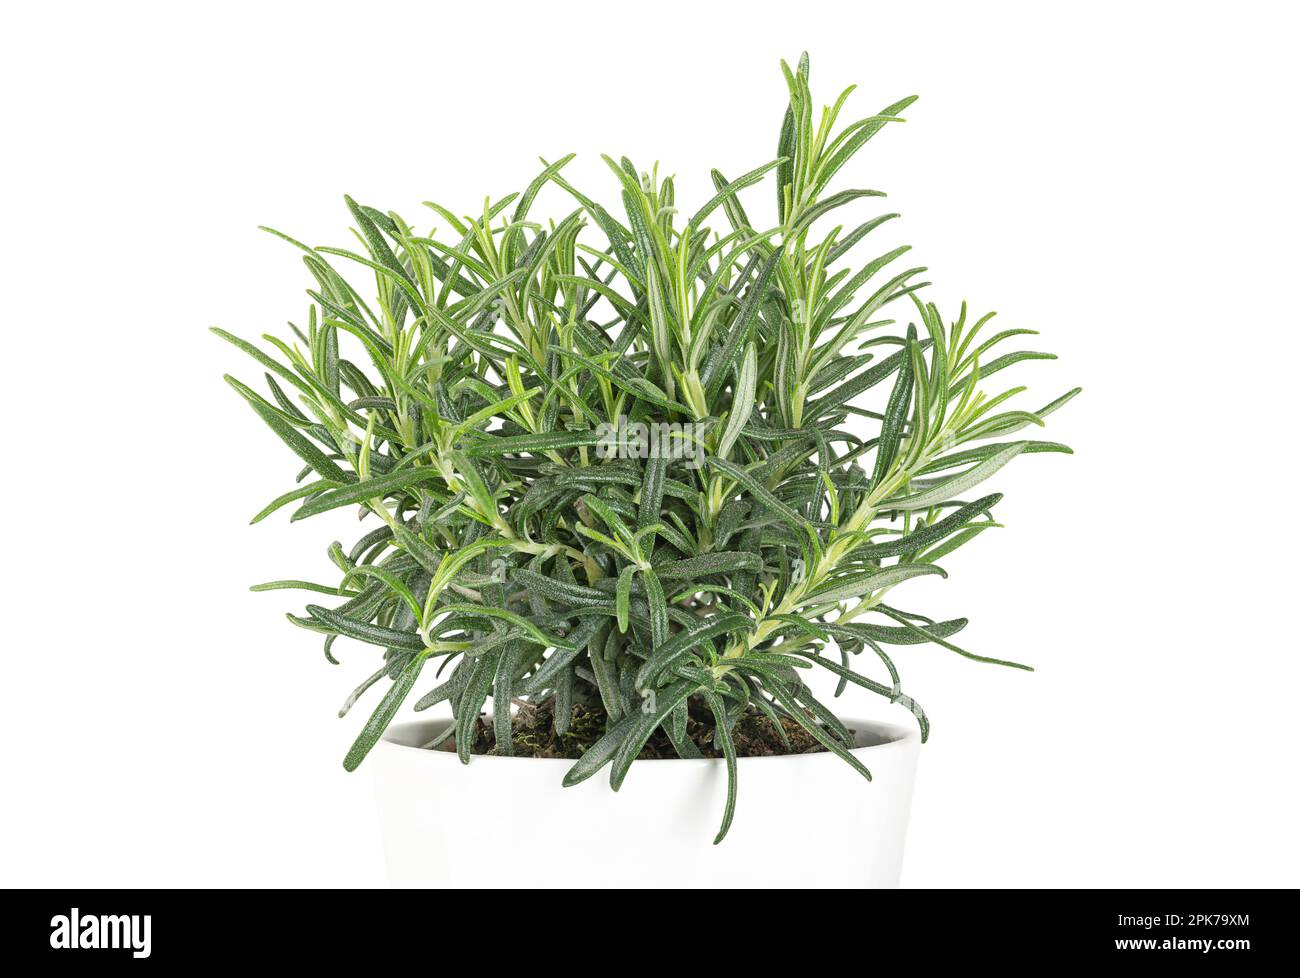 Rosmarino, pianta giovane in una pentola bianca. Salvia rosmarinus, un arbusto aromatico sempreverde con fragranti foglie verdi aghiformi. Foto Stock